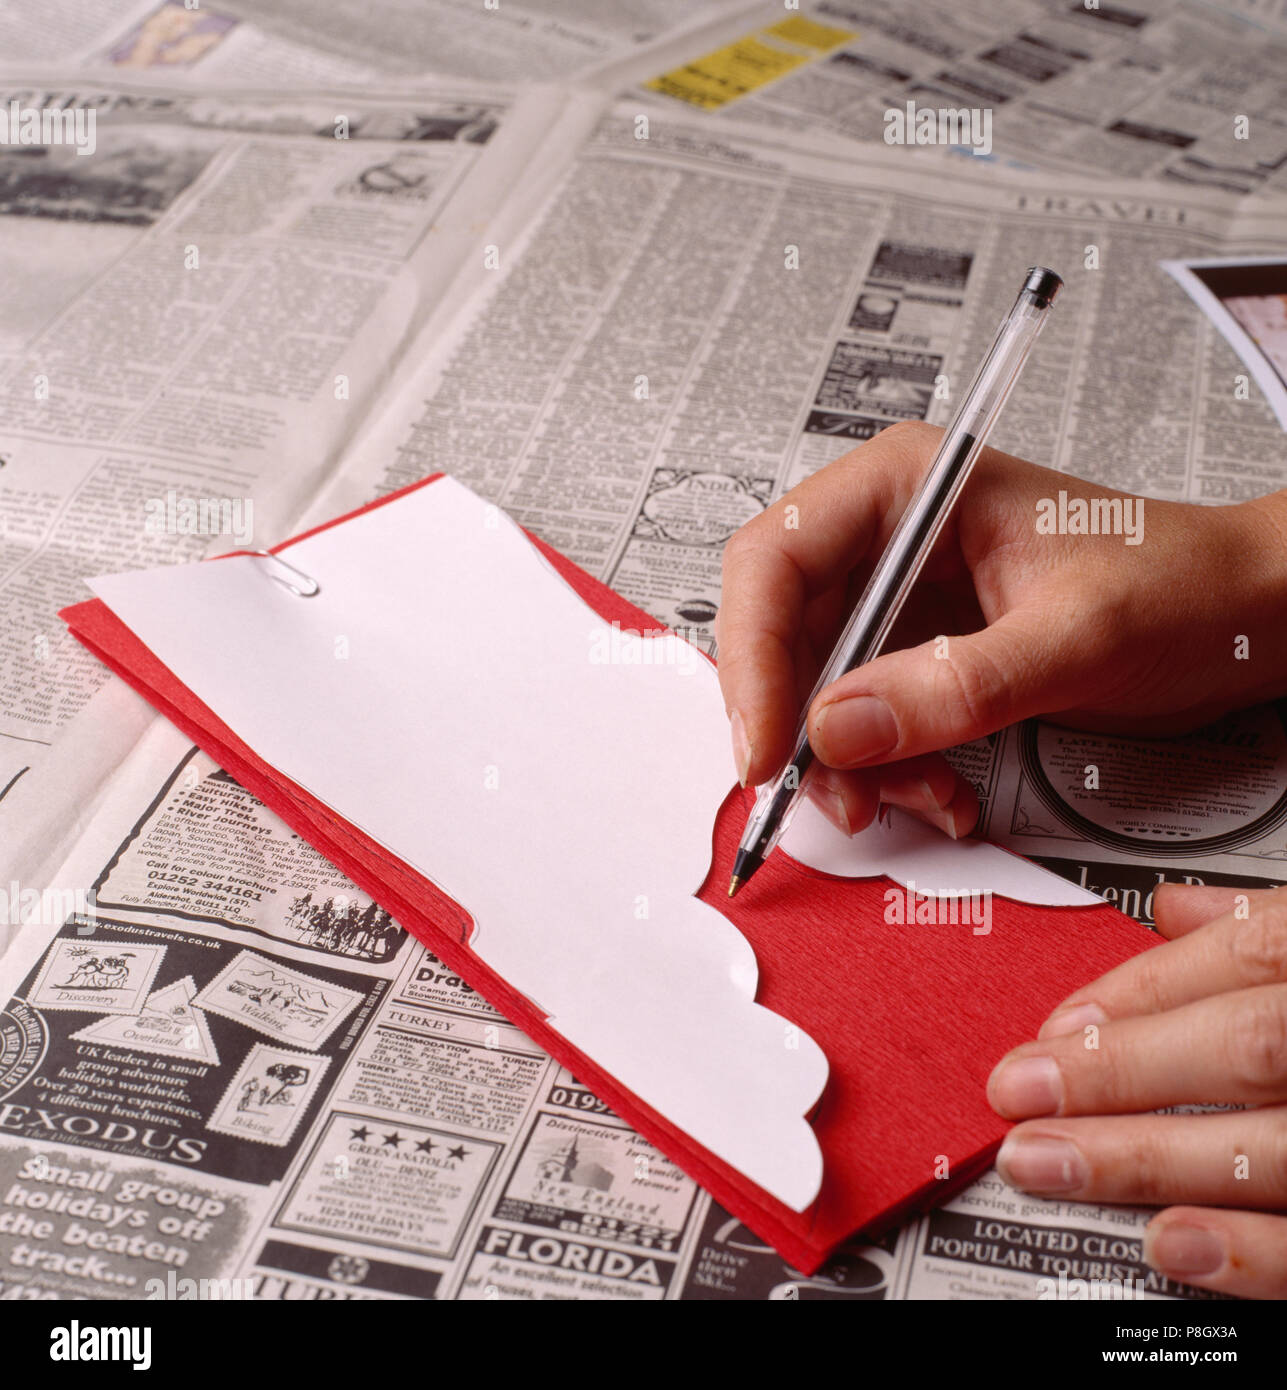 Close-up de mains à l'aide d'un stylo pour dessiner autour de tenplate blanc sur papier crépon rouge pour un usage éditorial uniquement Banque D'Images